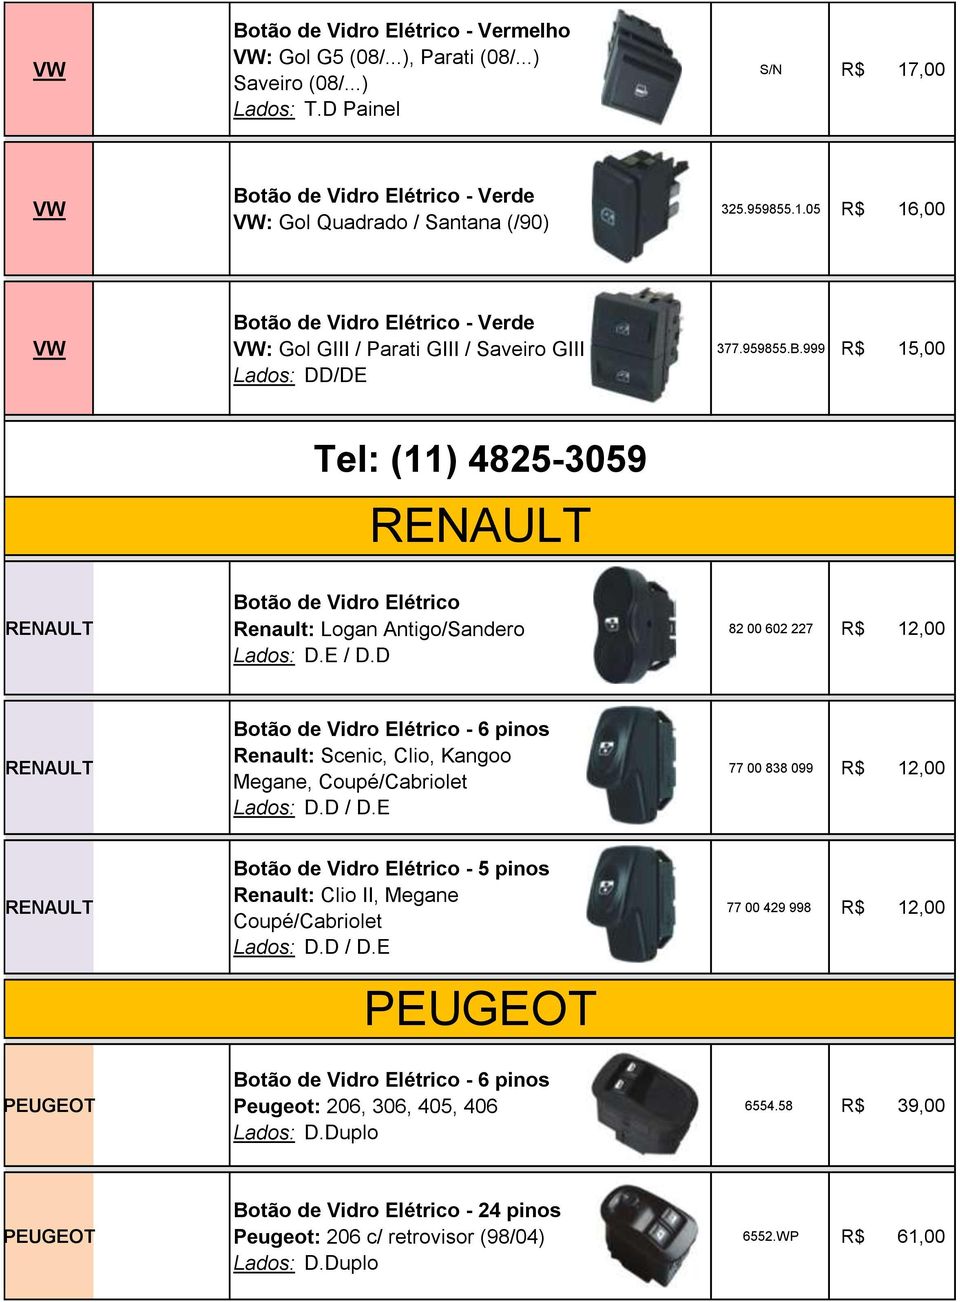 999 R$ 15,00 Tel: (11) 4825-3059 Renault: Logan Antigo/Sandero / D.